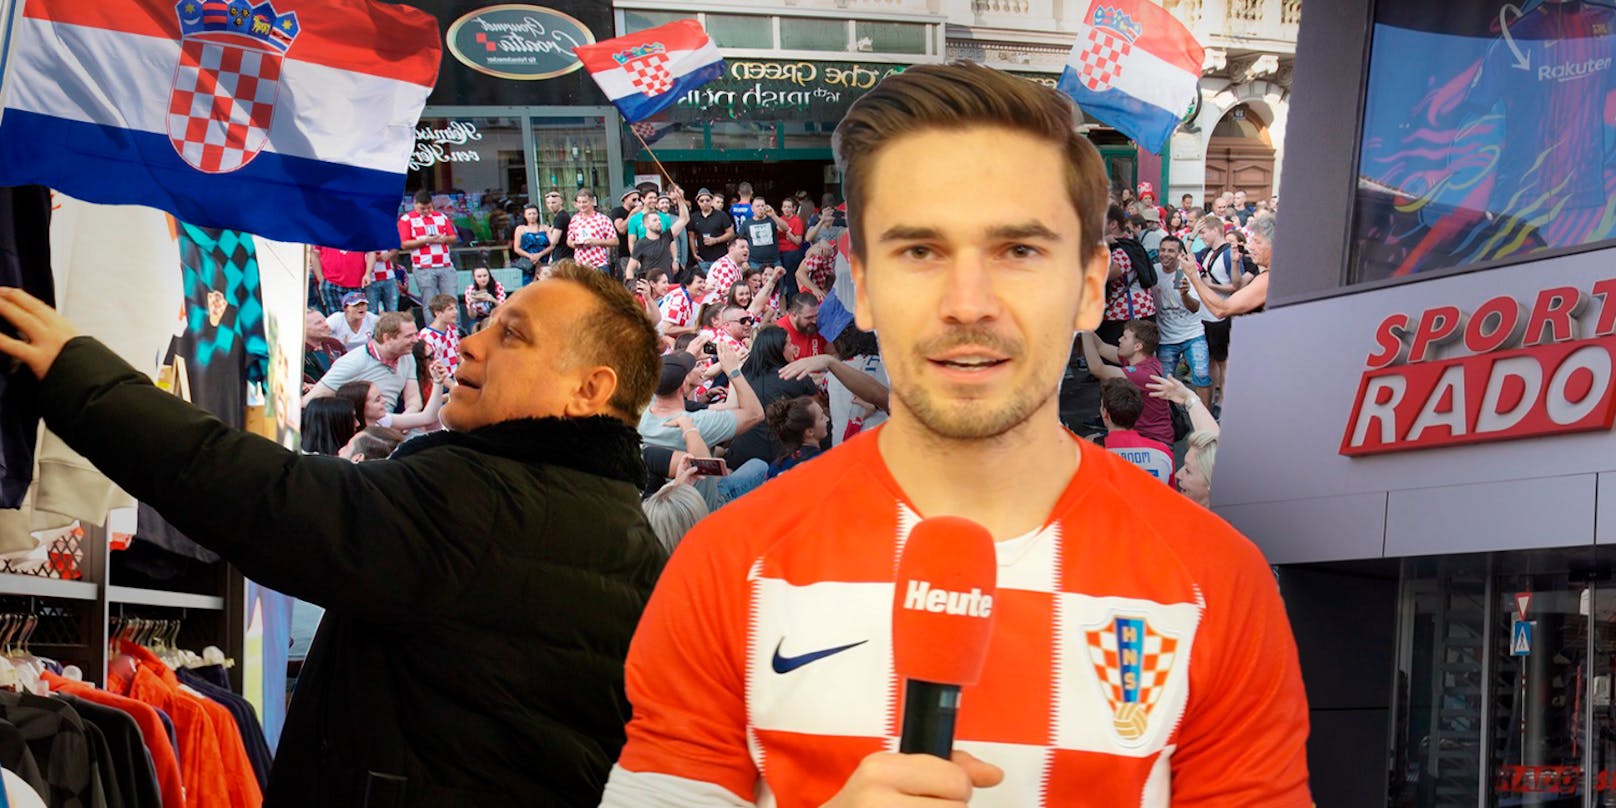 Kroatien-Fans stürmen Shop auf Wiener Balkan-Meile